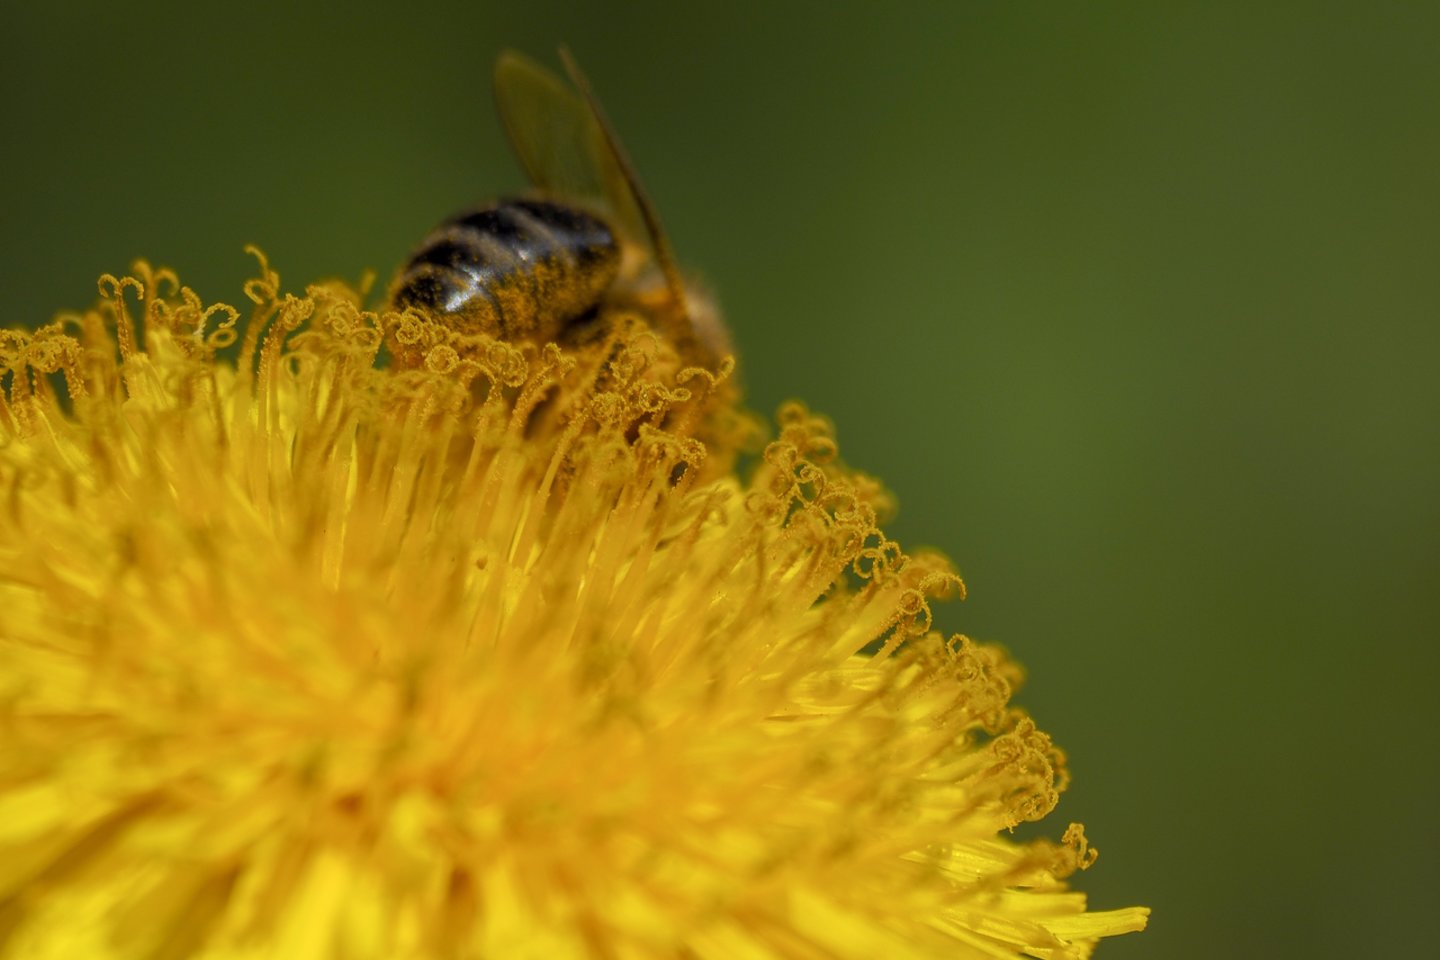 Įgėlus bitėms, širšėms, vapsvoms įprastinė audinių reakcija įgėlimo vietoje: aštrus skausmas, patinimas, šie simptomai dažniausiai išnyksta per kelias valandas.<br>V.Ščiavinsko nuotr.